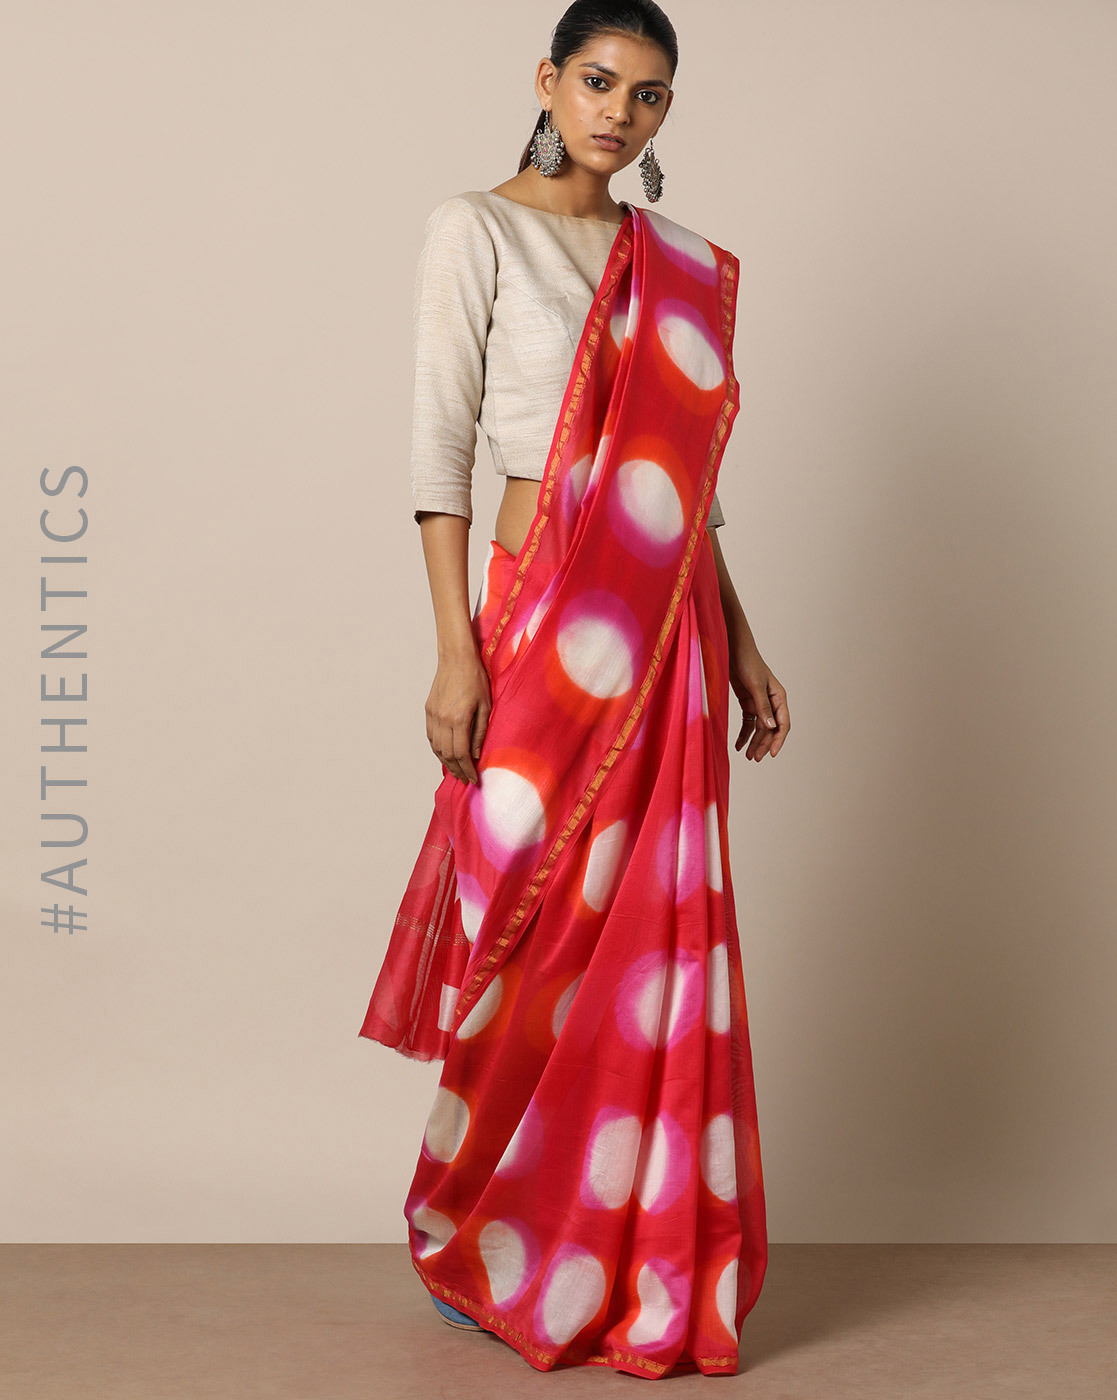 stylish shibori sarees